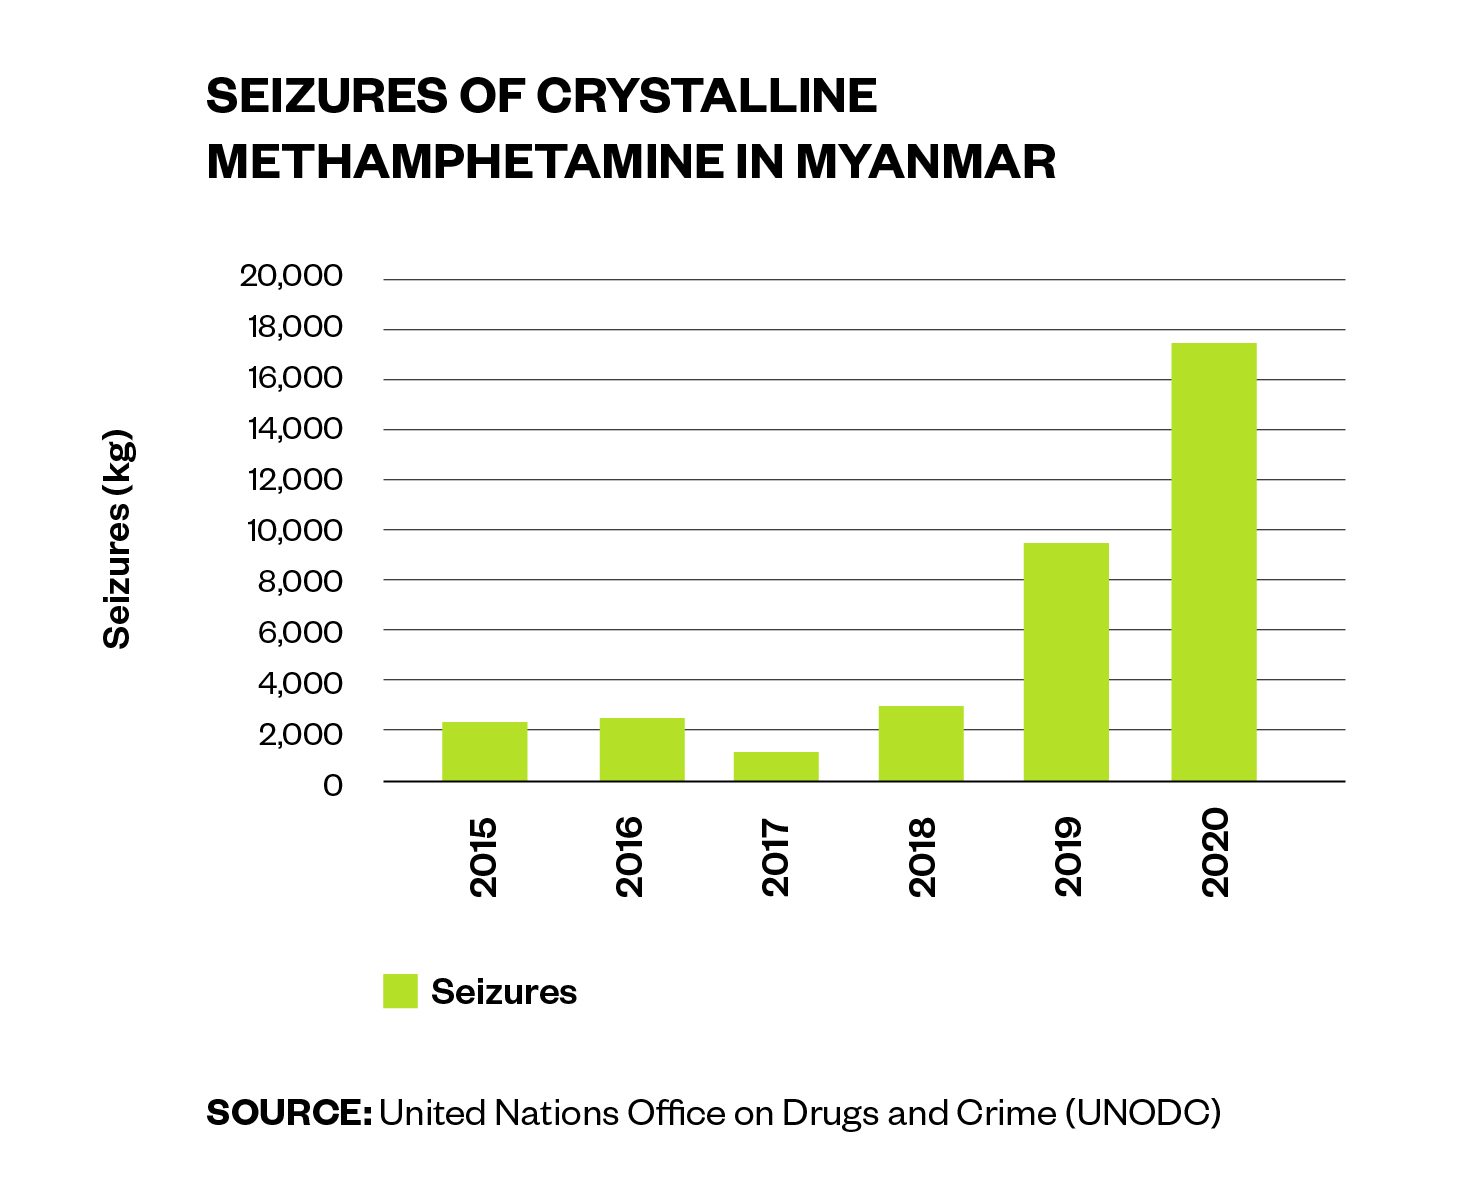 Seizures of crystalline methamphetamine